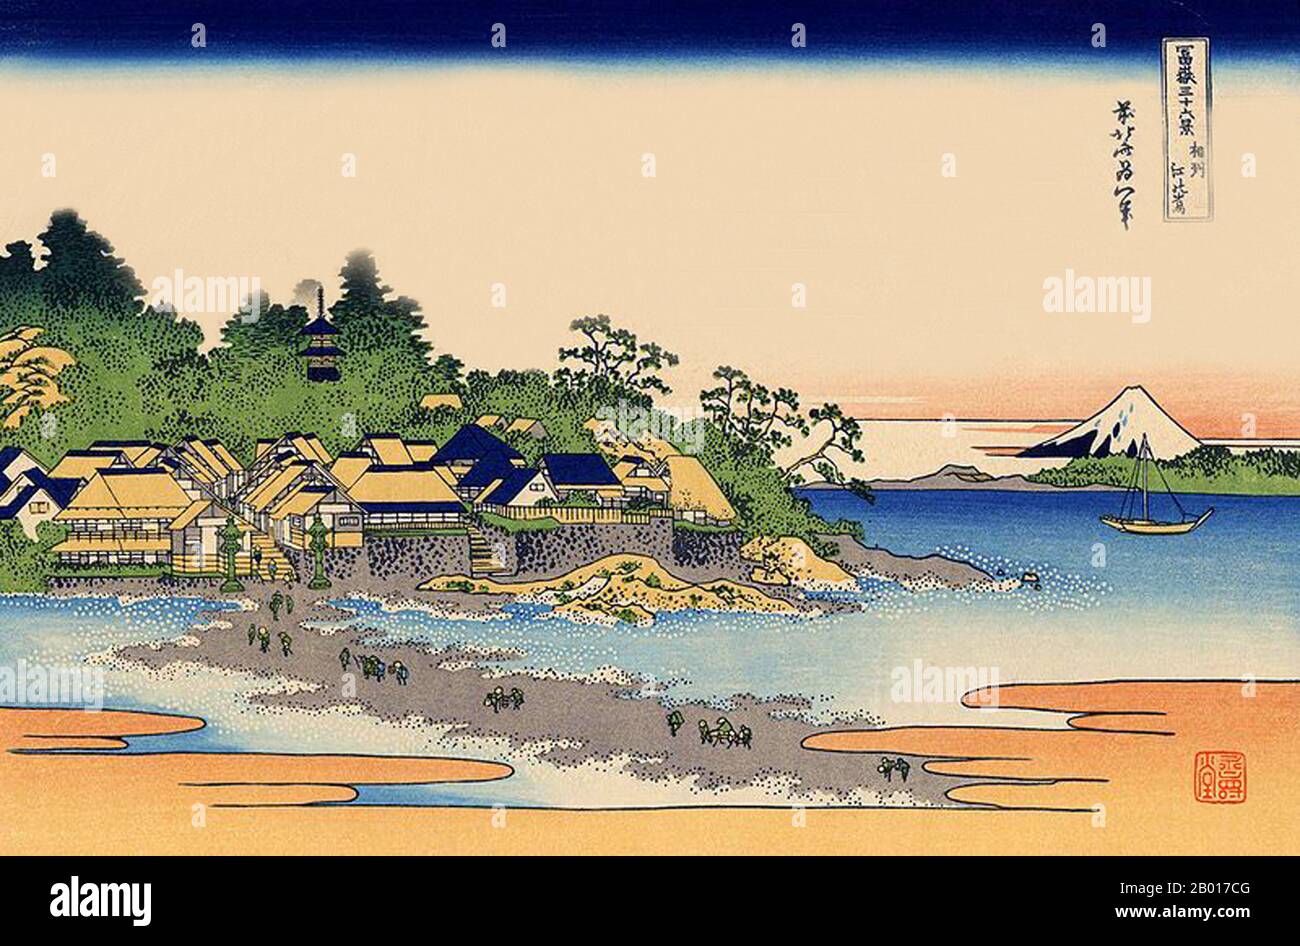 Japon: 'Enoshima dans la baie de Sagami'.Imprimé Ukiyo-e en blocs de bois de la série «trente-six vues du Mont Fuji» de Katsushika Hokusai (31 octobre 1760 - 10 mai 1849), 1830.«trente-six vues du Mont Fuji» est une série «ukiyo-e» de gravures sur bois de l’artiste japonais Katsushika Hokusai.La série représente le Mont Fuji dans différentes saisons et conditions météorologiques à partir de divers endroits et distances.Il se compose en fait de 46 tirages créés entre 1826 et 1833.Les 36 premiers ont été inclus dans la publication originale et, en raison de leur popularité, 10 autres ont été ajoutés après la publication originale. Banque D'Images